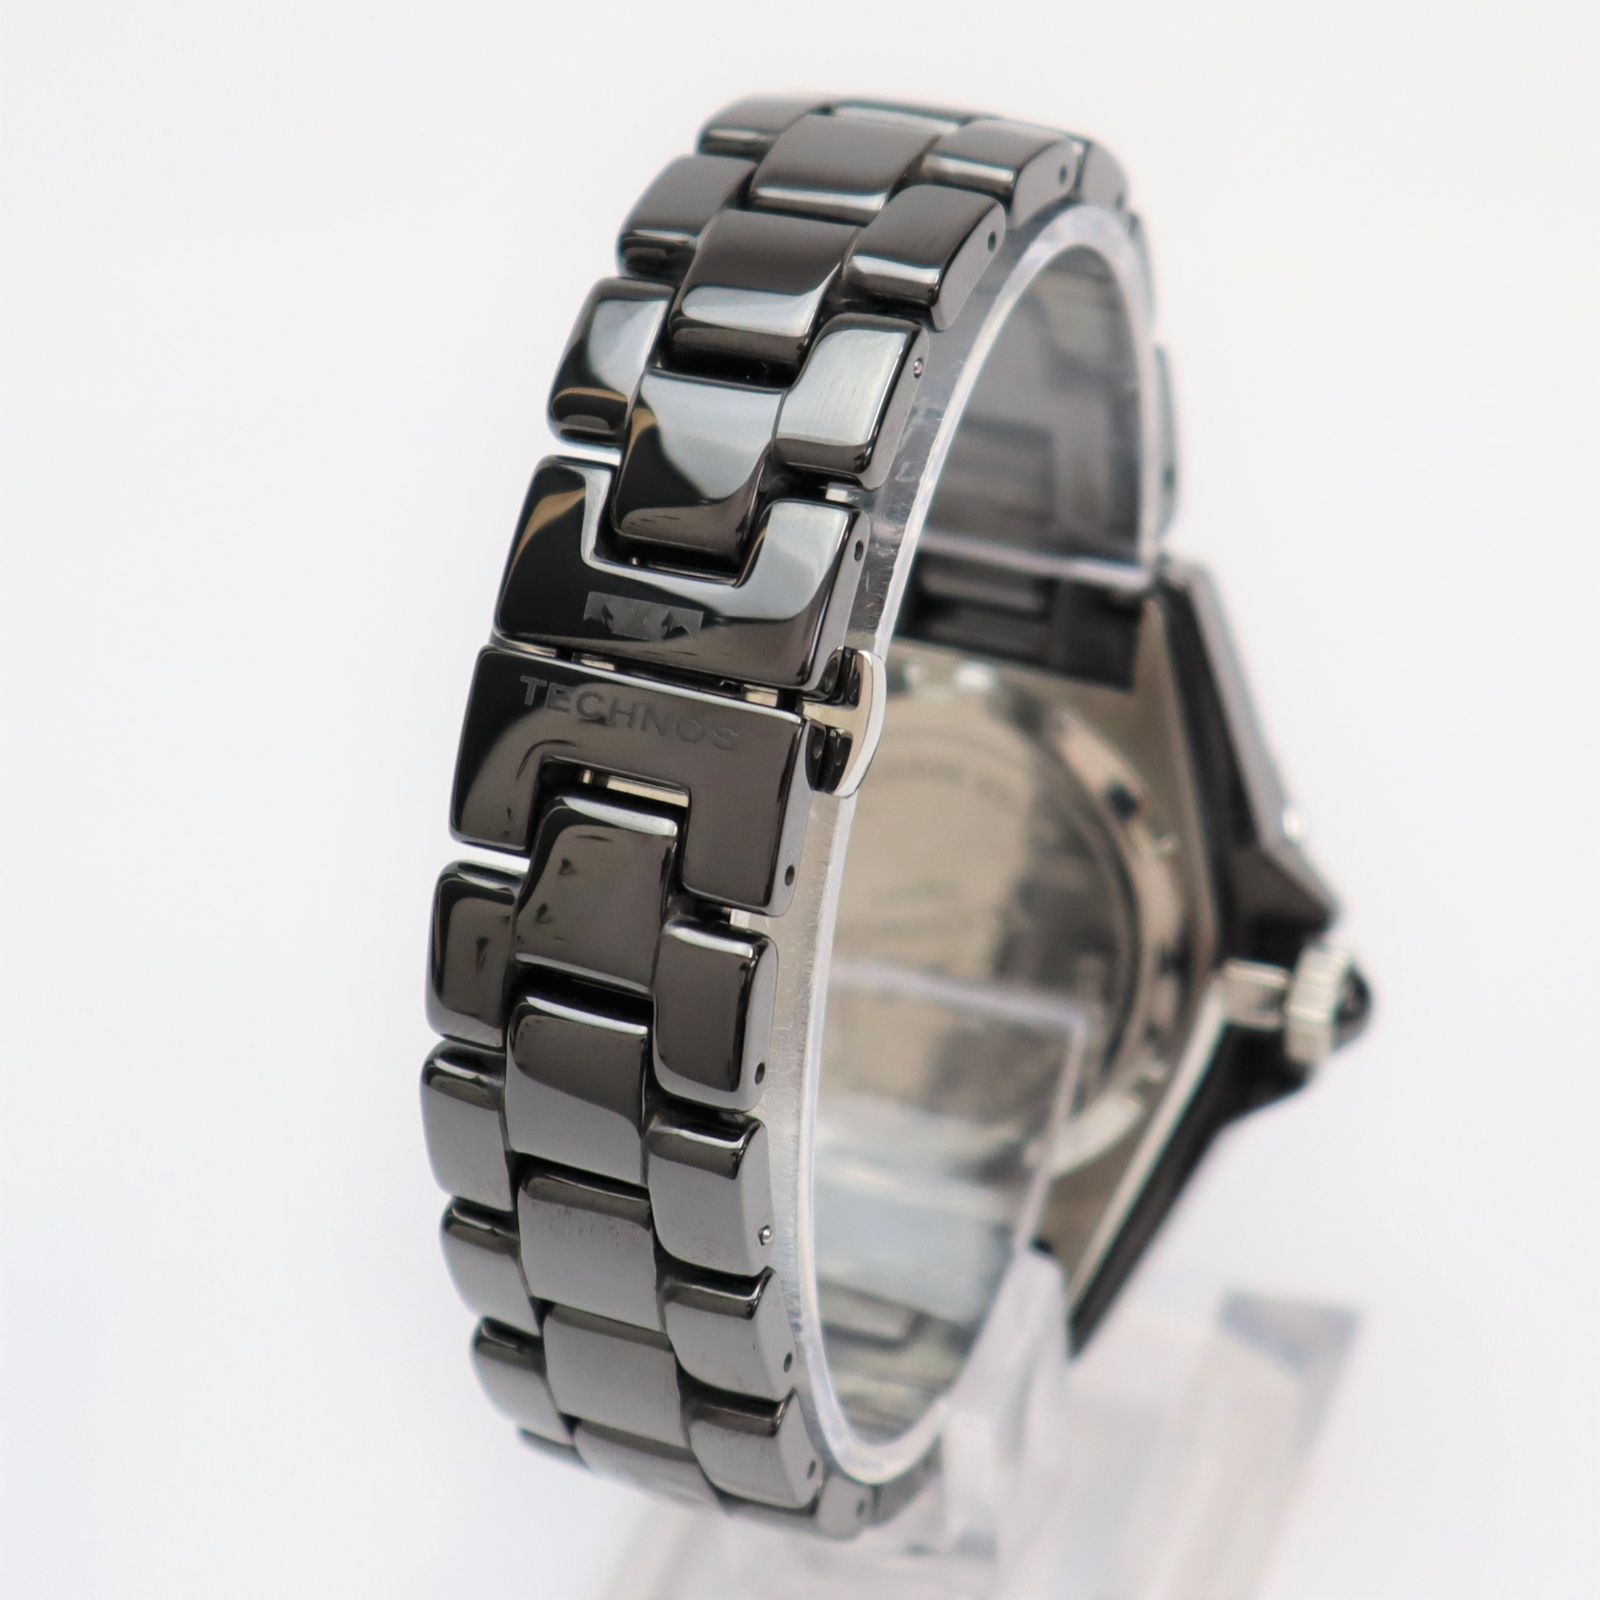 良品 テクノス セラミック T9A61 クォーツ ブラック文字盤 保証書兼取説/余りコマ/箱 メンズ腕時計